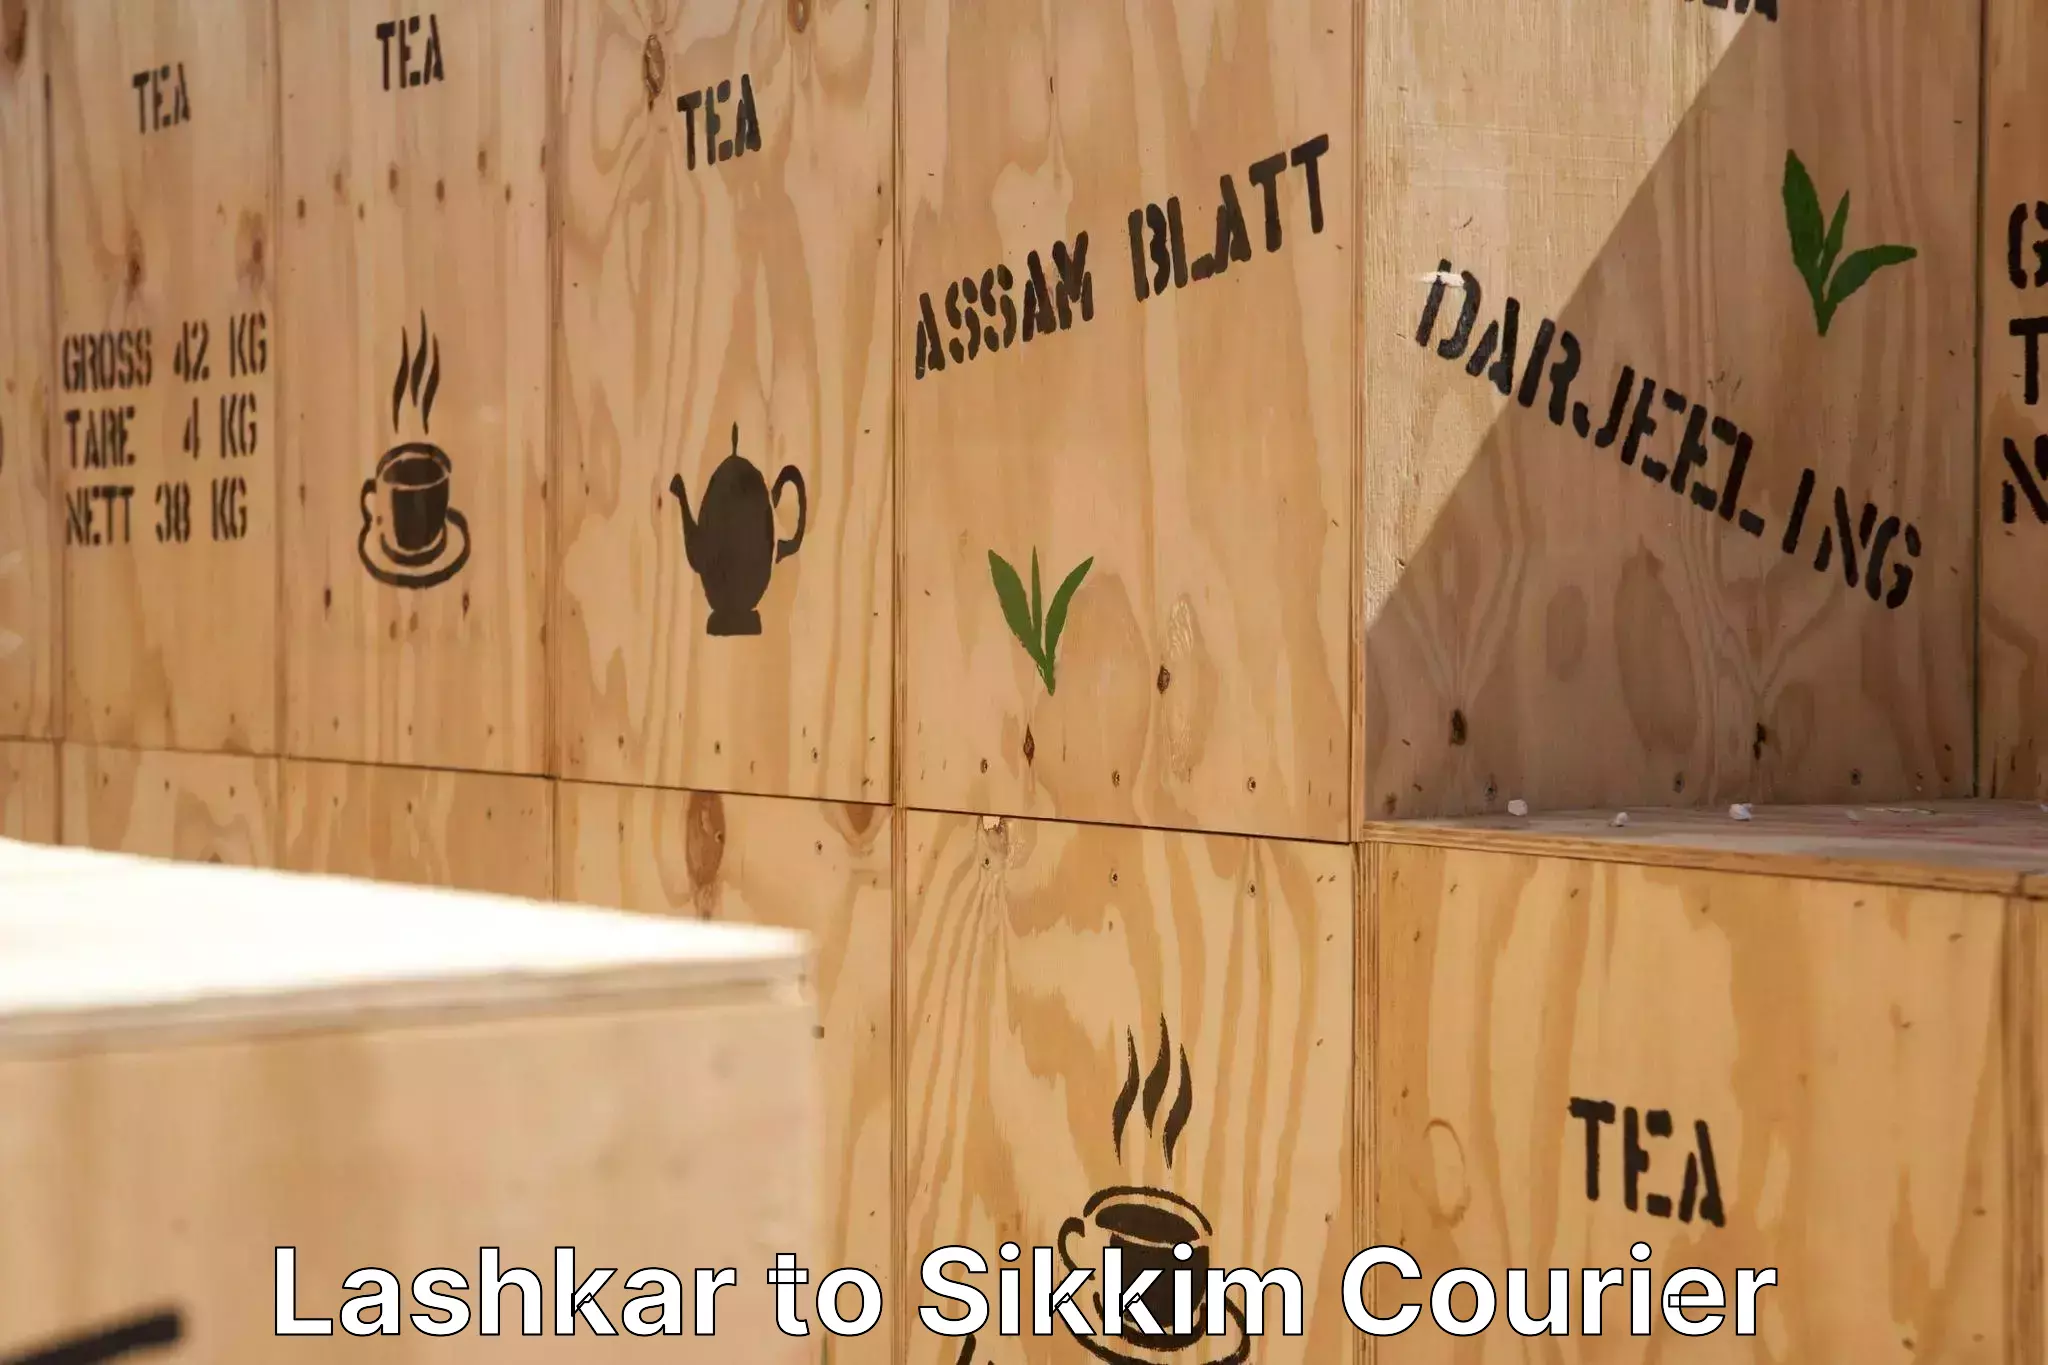 Furniture transport specialists Lashkar to East Sikkim